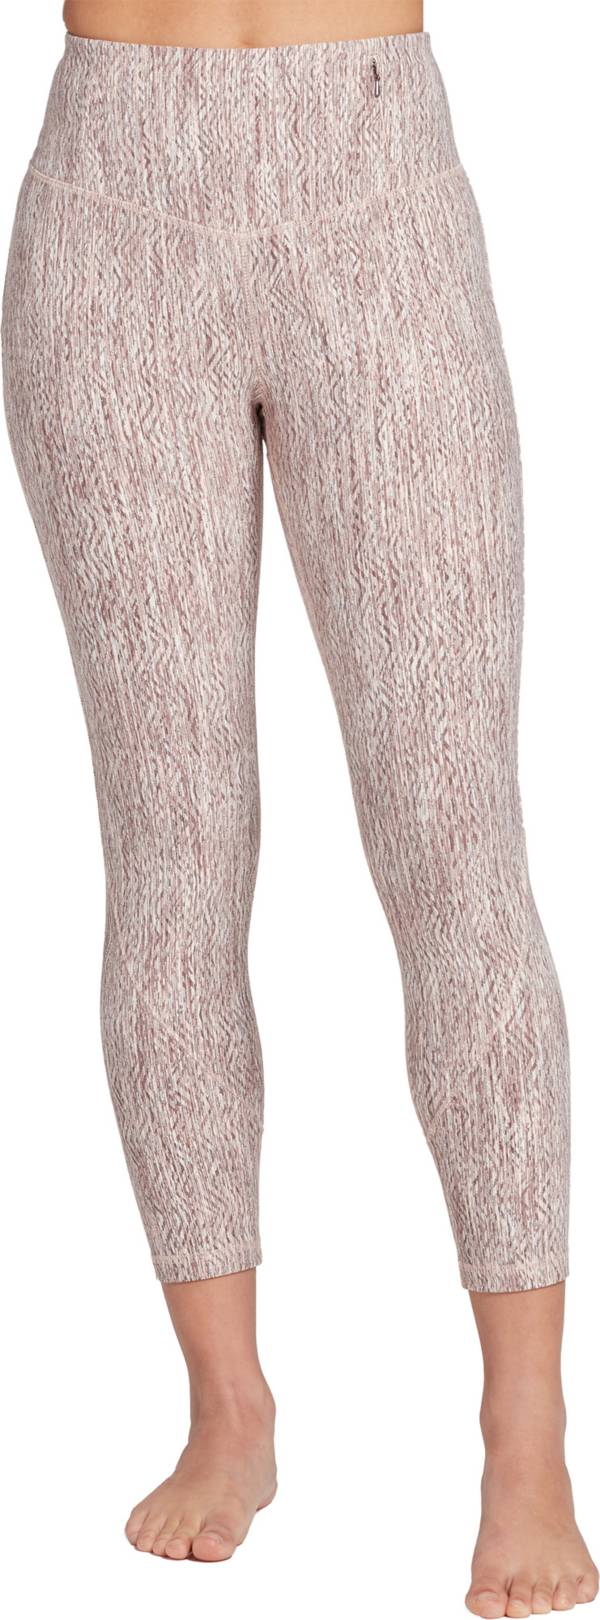 CALIA Women's Essential Jacquard 7/8 Leggings product image